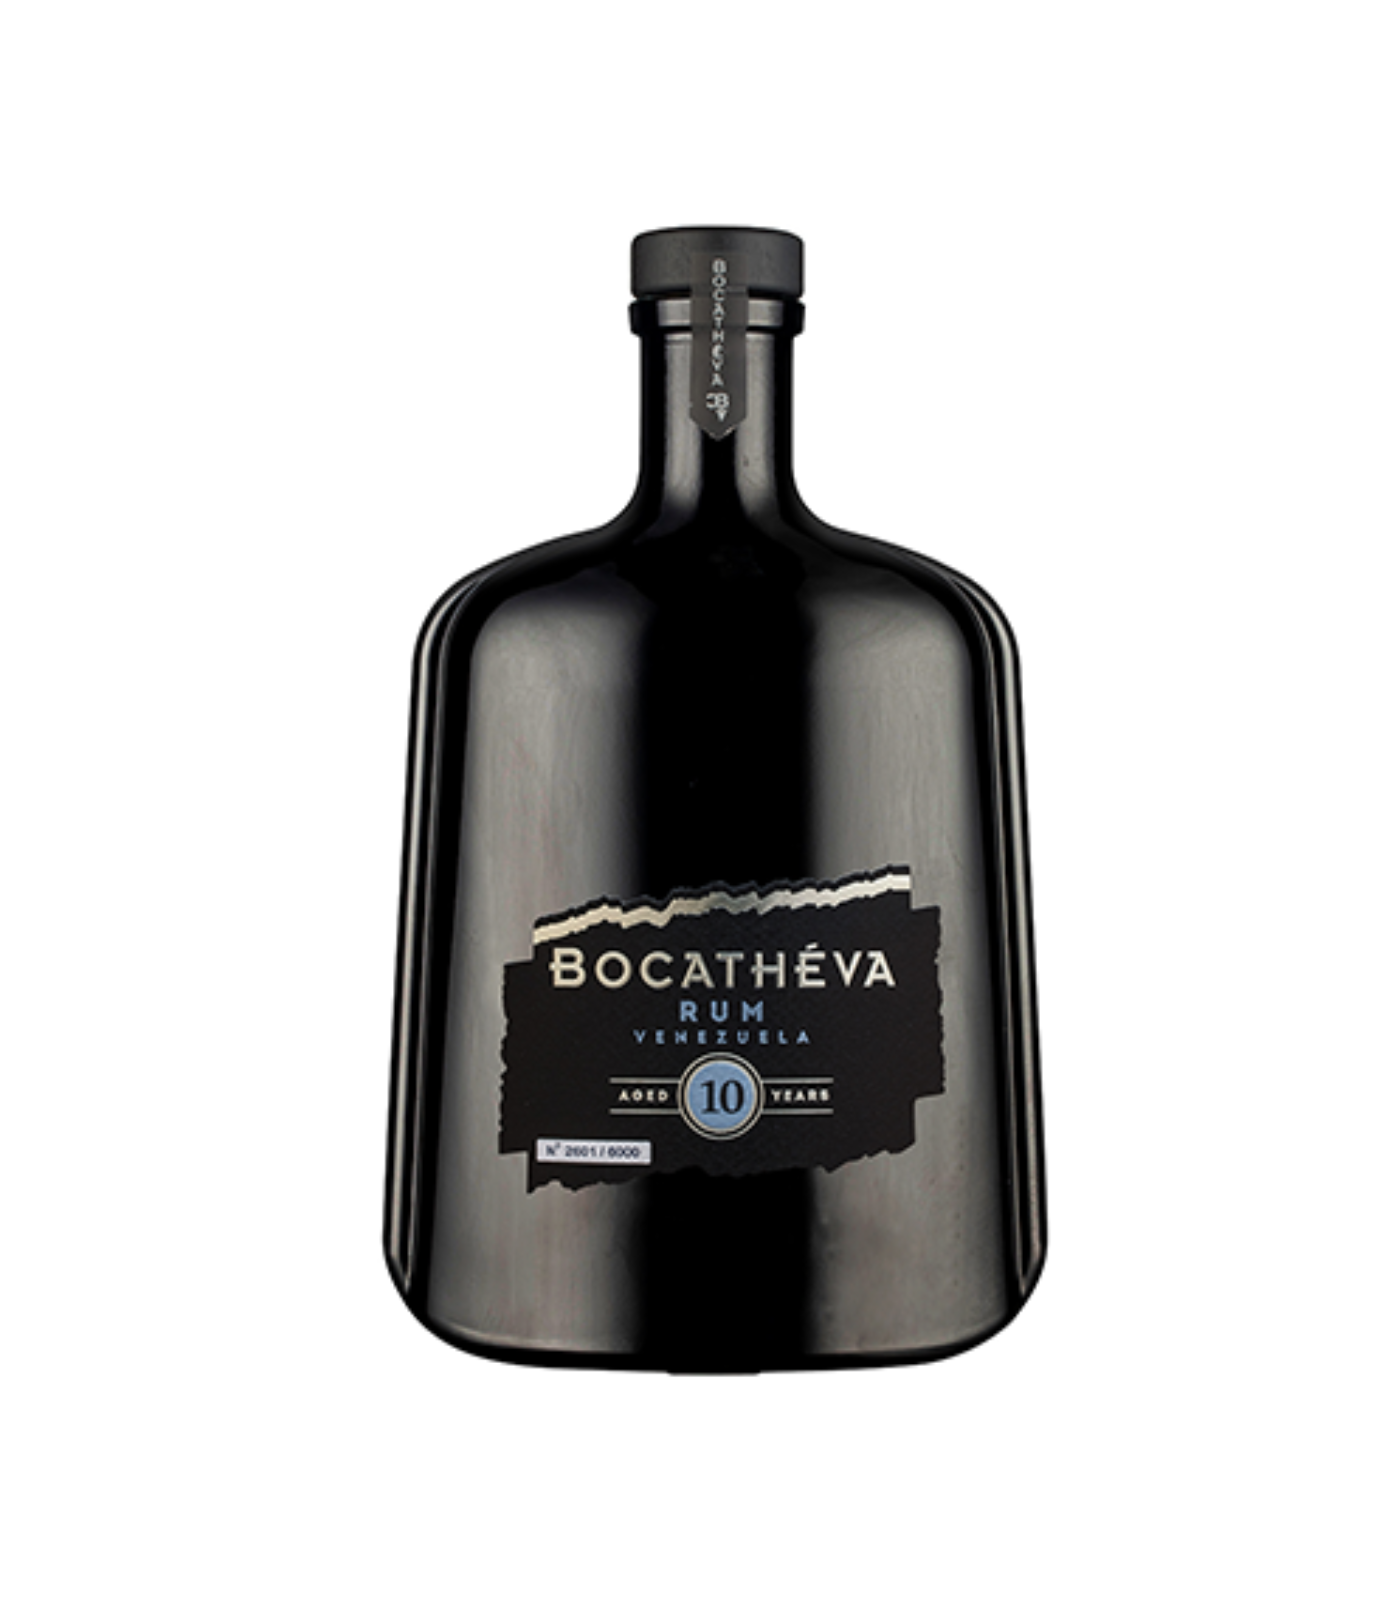 Bocatheva 10 Year Old Rum - Venezuela (70cl; 45%)